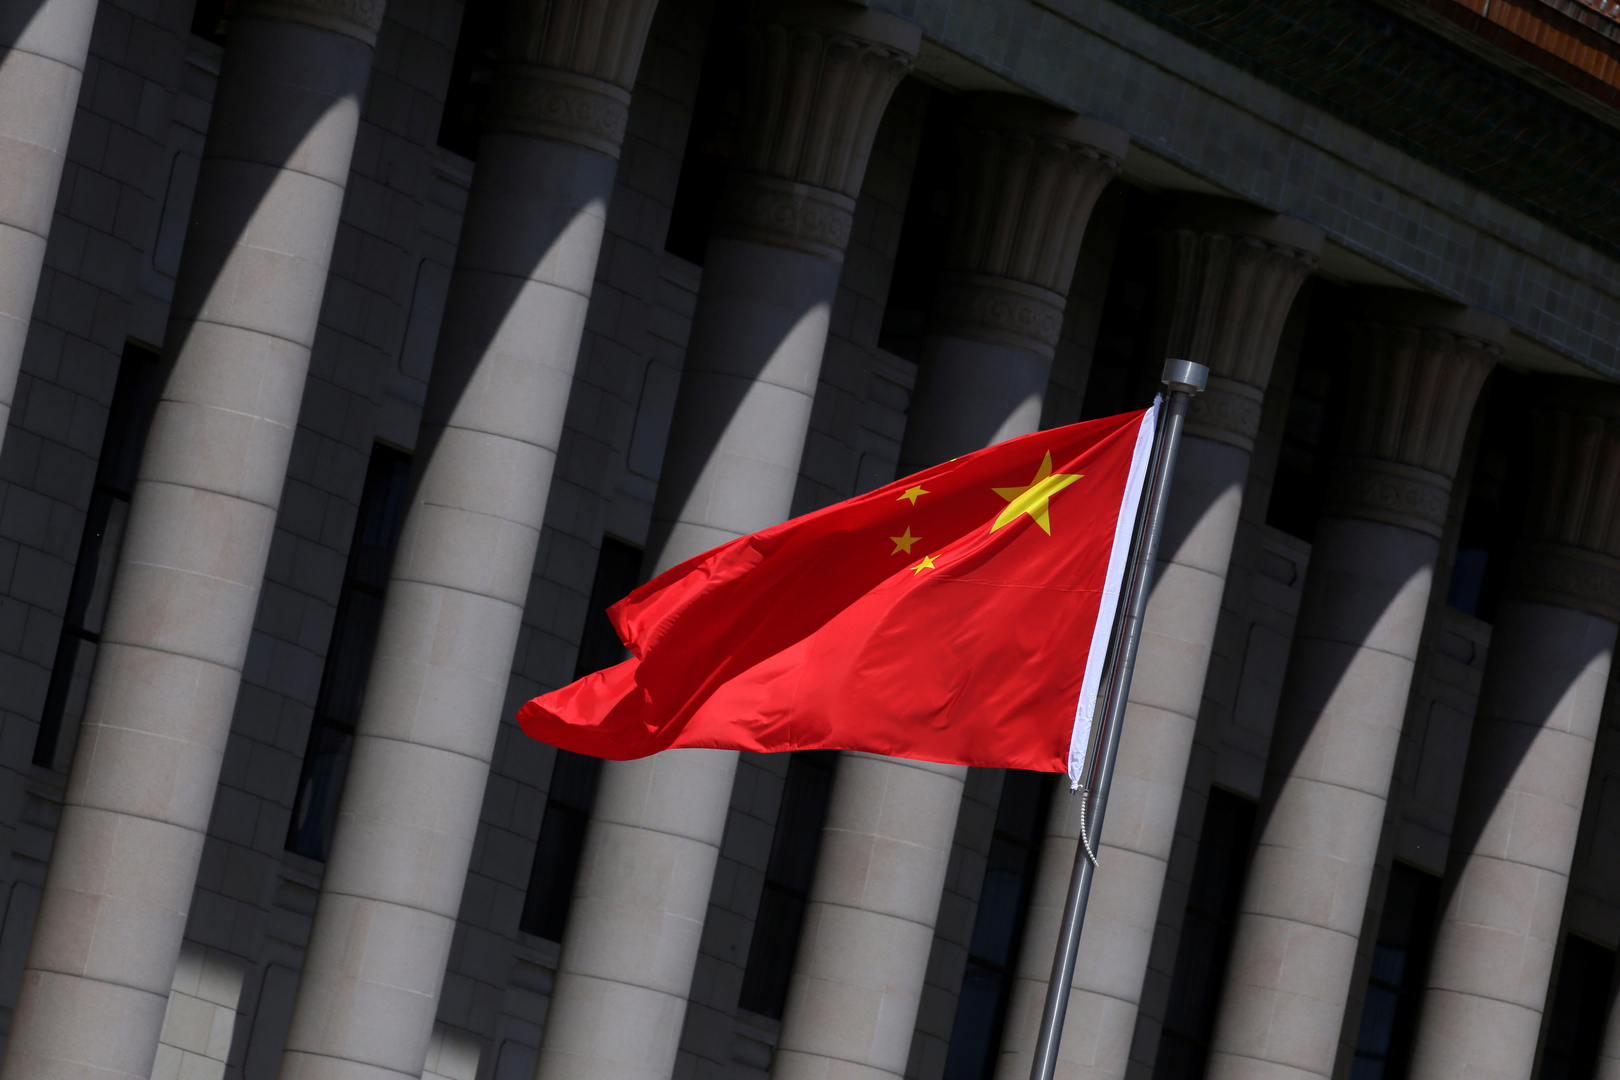 بكين: بومبيو يكذب والعدو الذي يواجه الولايات المتحدة هو كورونا وليس الصين